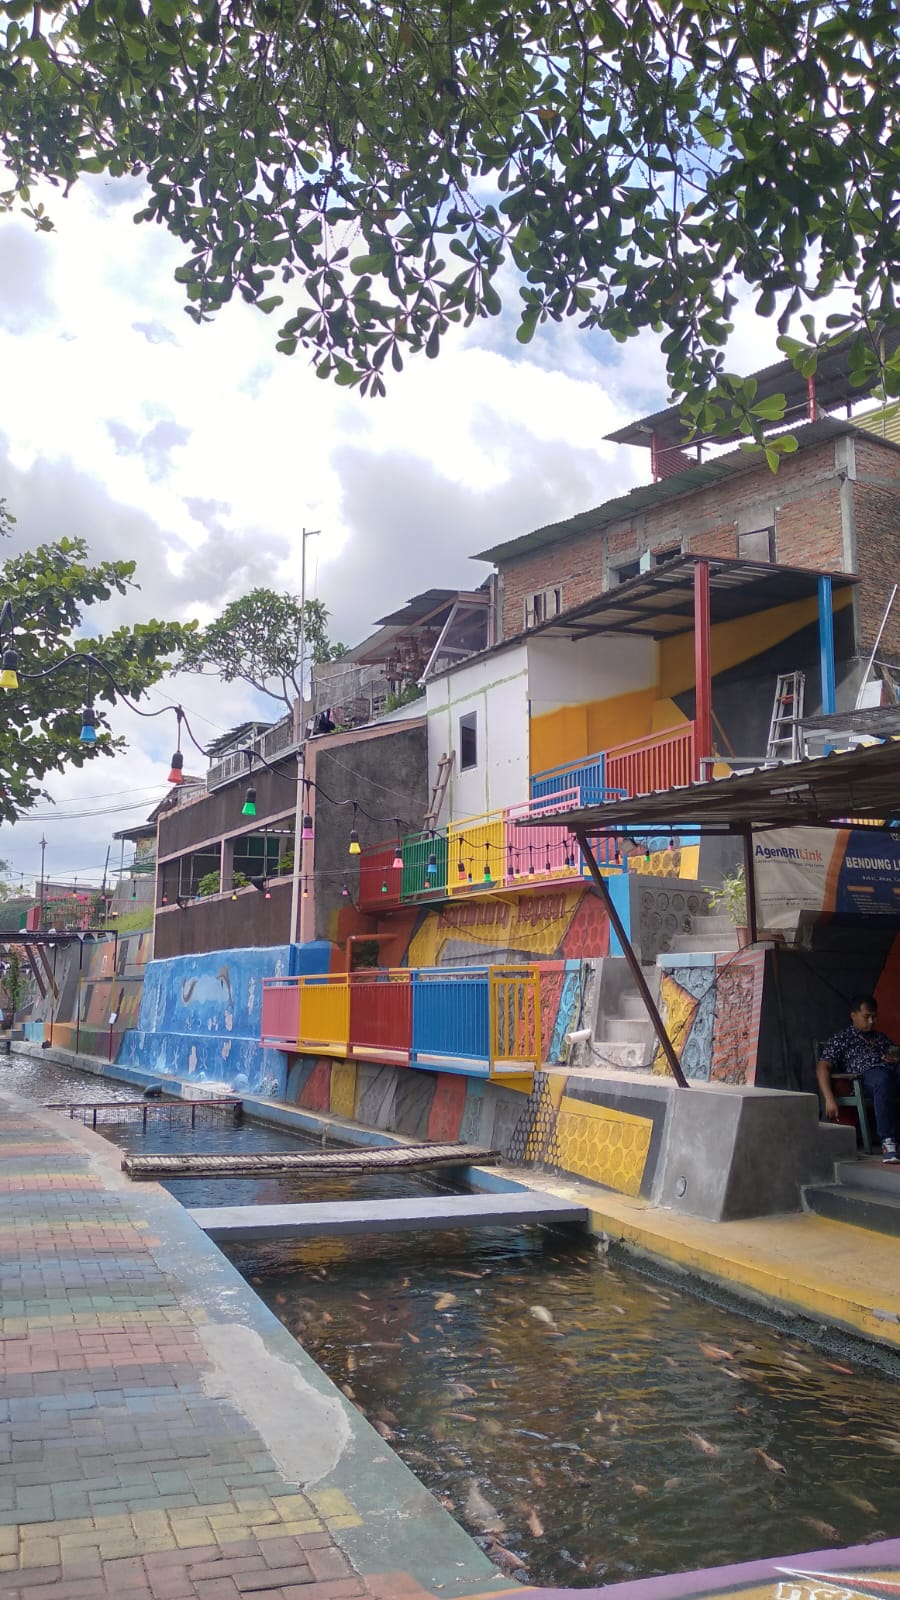 9 Foto terbaru Kampung Wisata Kali Gajah Wong, dulu kumuh kini asri